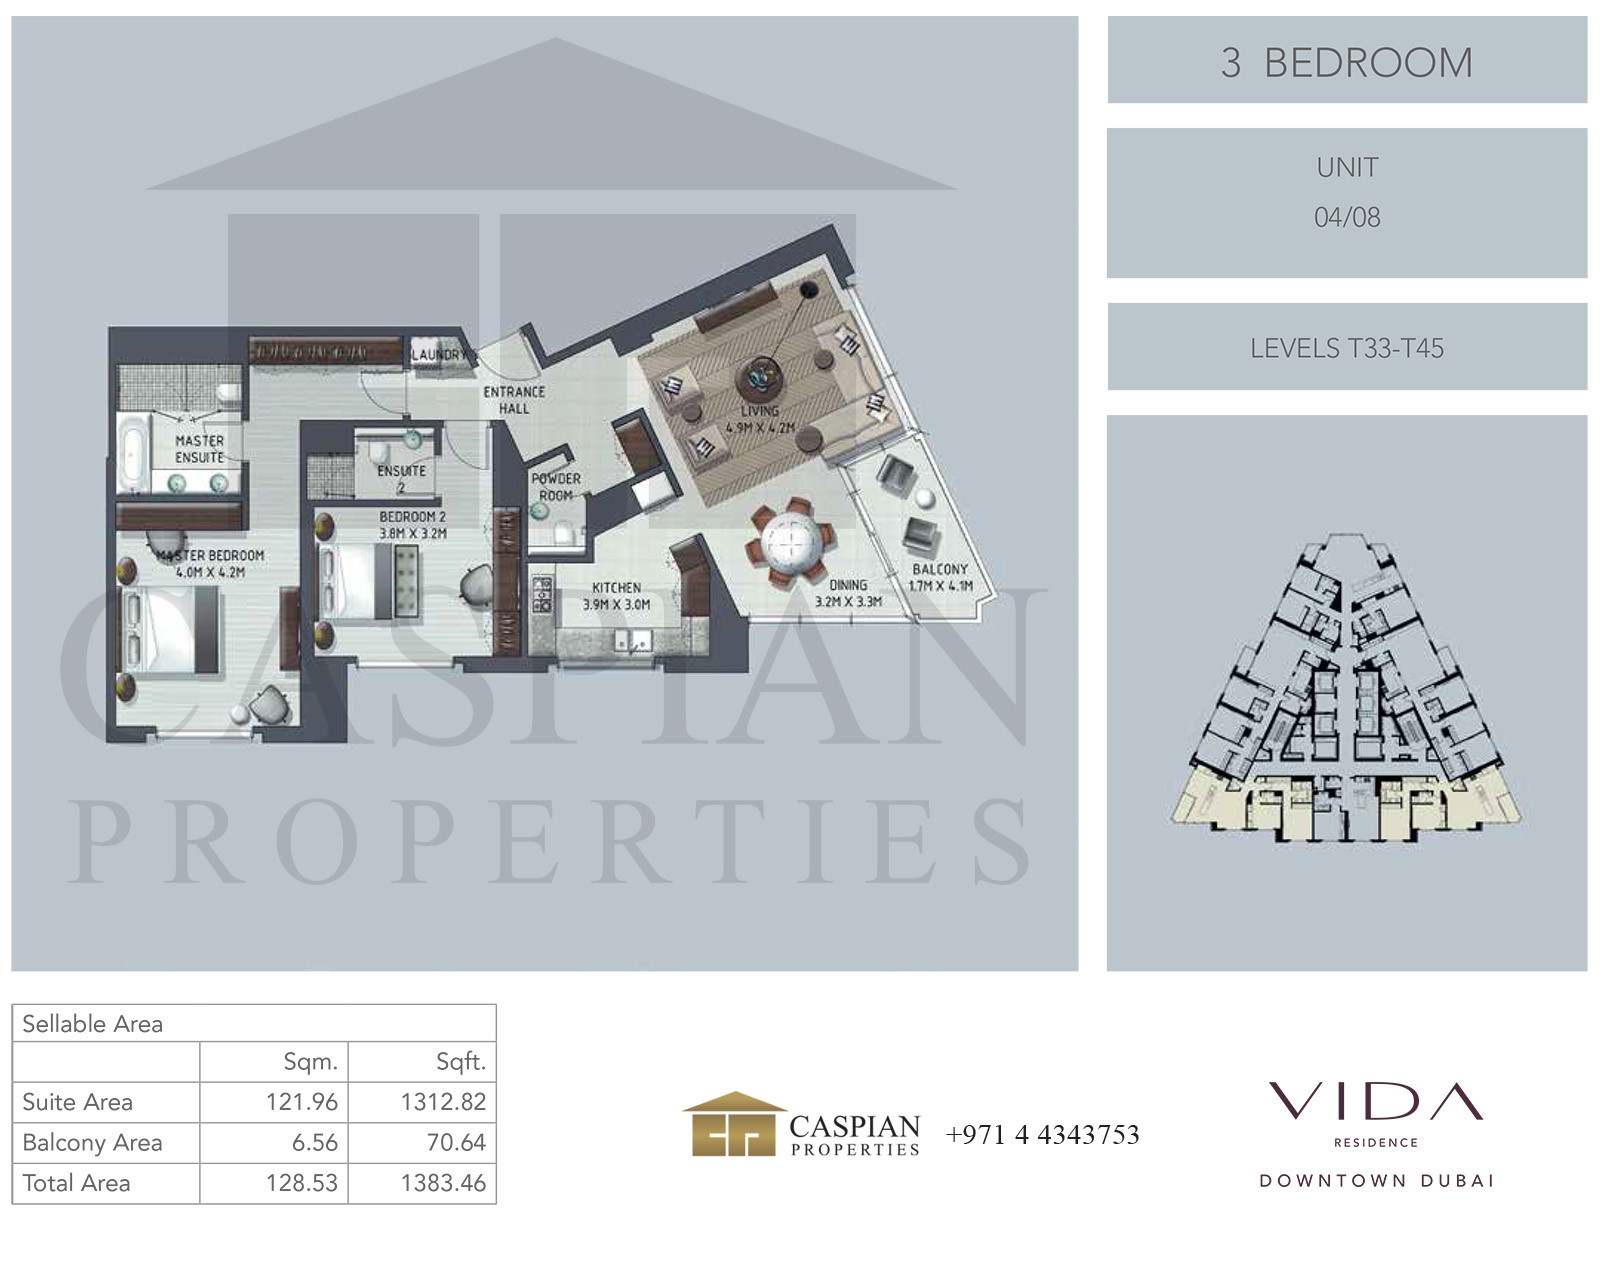 Z Residence Floor Plan Daintree residence floor plan is